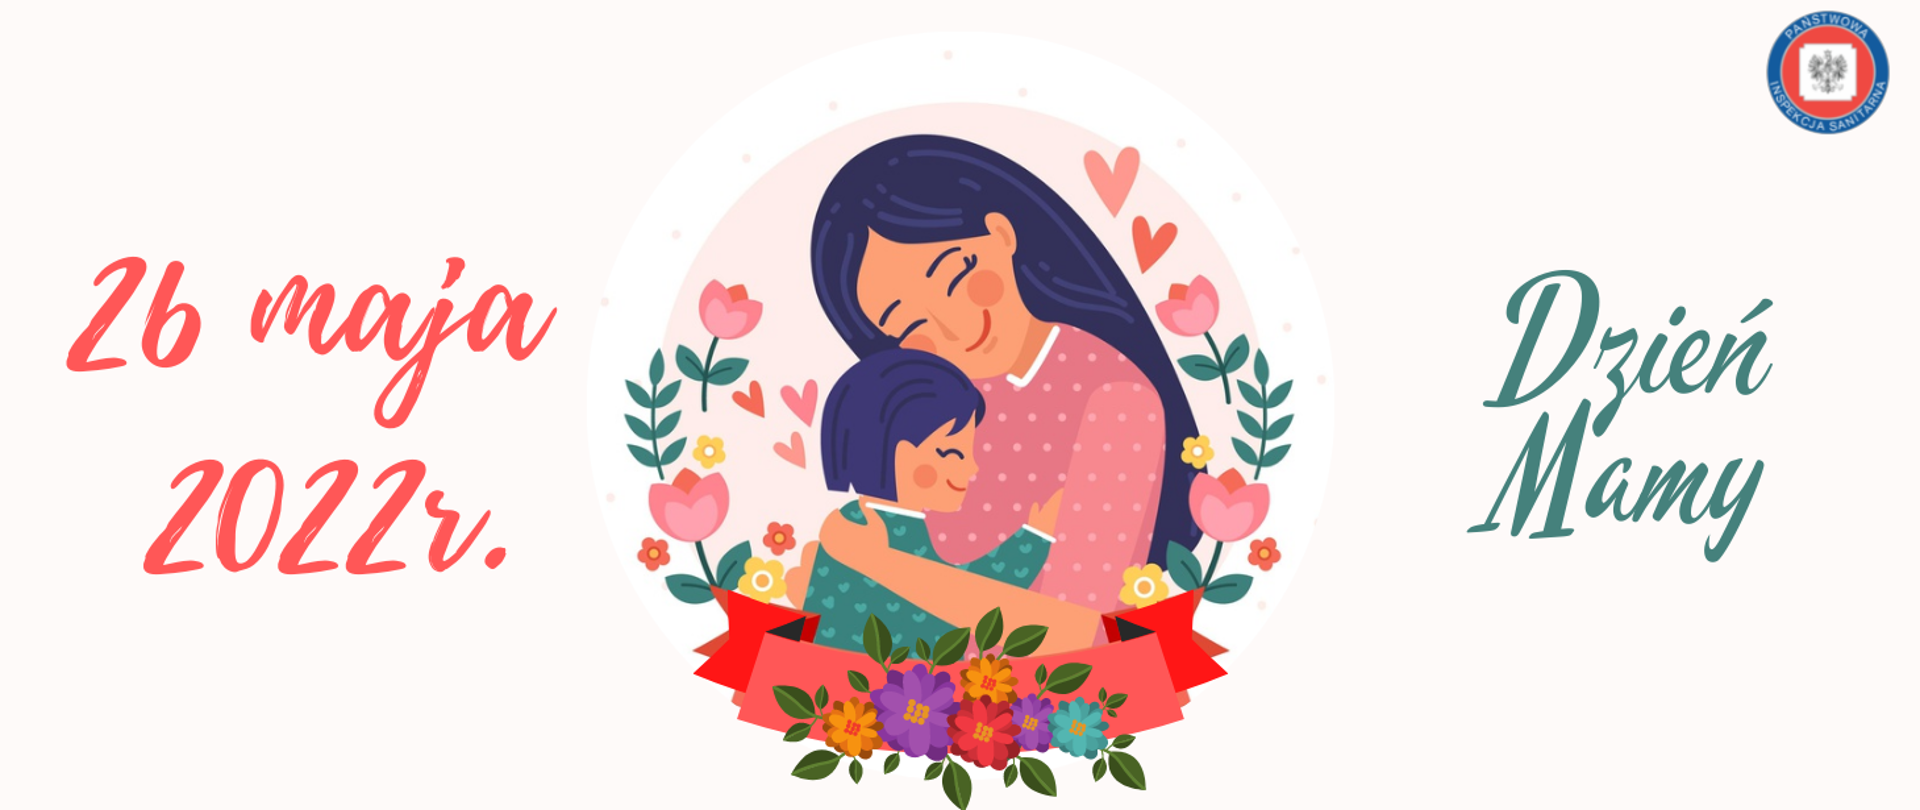 Grafika zawiera w centralnej części wizerunek uśmiechniętej kobiety – matki, tulącej do piersi dziecko. Osoby w otoczeniu kolorowych kwiatów i serc.
Po lewej stronie znajduje się data: 26 maja 2022 r., skrajnie po prawej stronie hasło: Dzień Mamy
W prawym, górnym rogu występuje logo Państwowej Inspekcji Sanitarnej (Obramowanie w kolorze granatowym, na którym umieszczony jest napis Państwowa Inspekcja Sanitarna). 